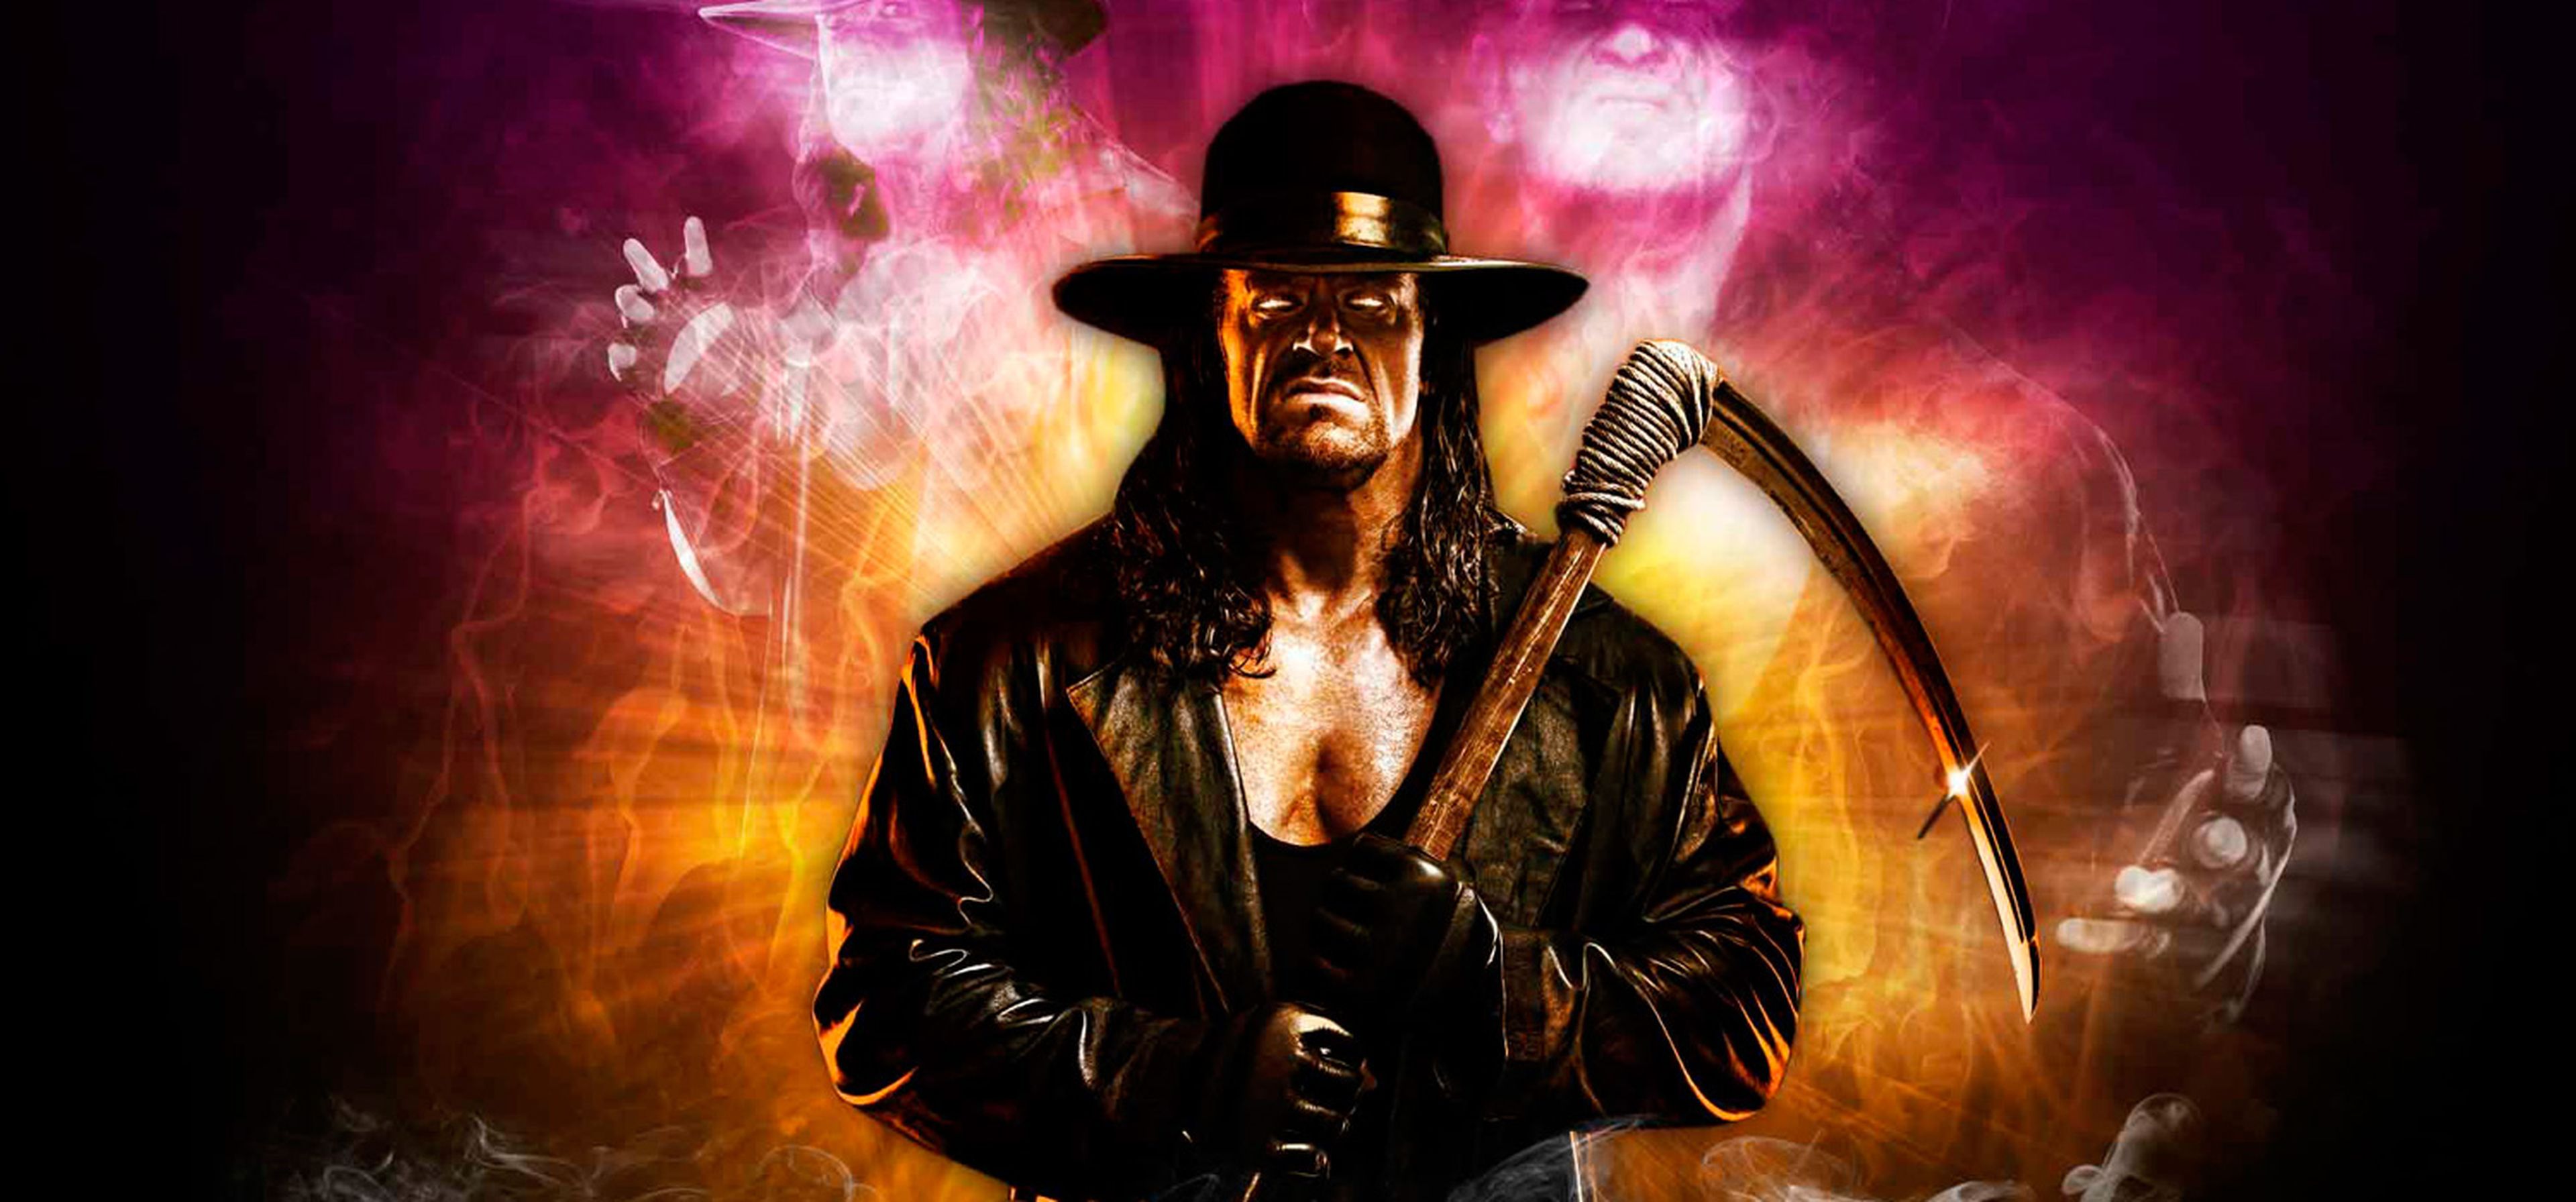 Principal The Undertaker